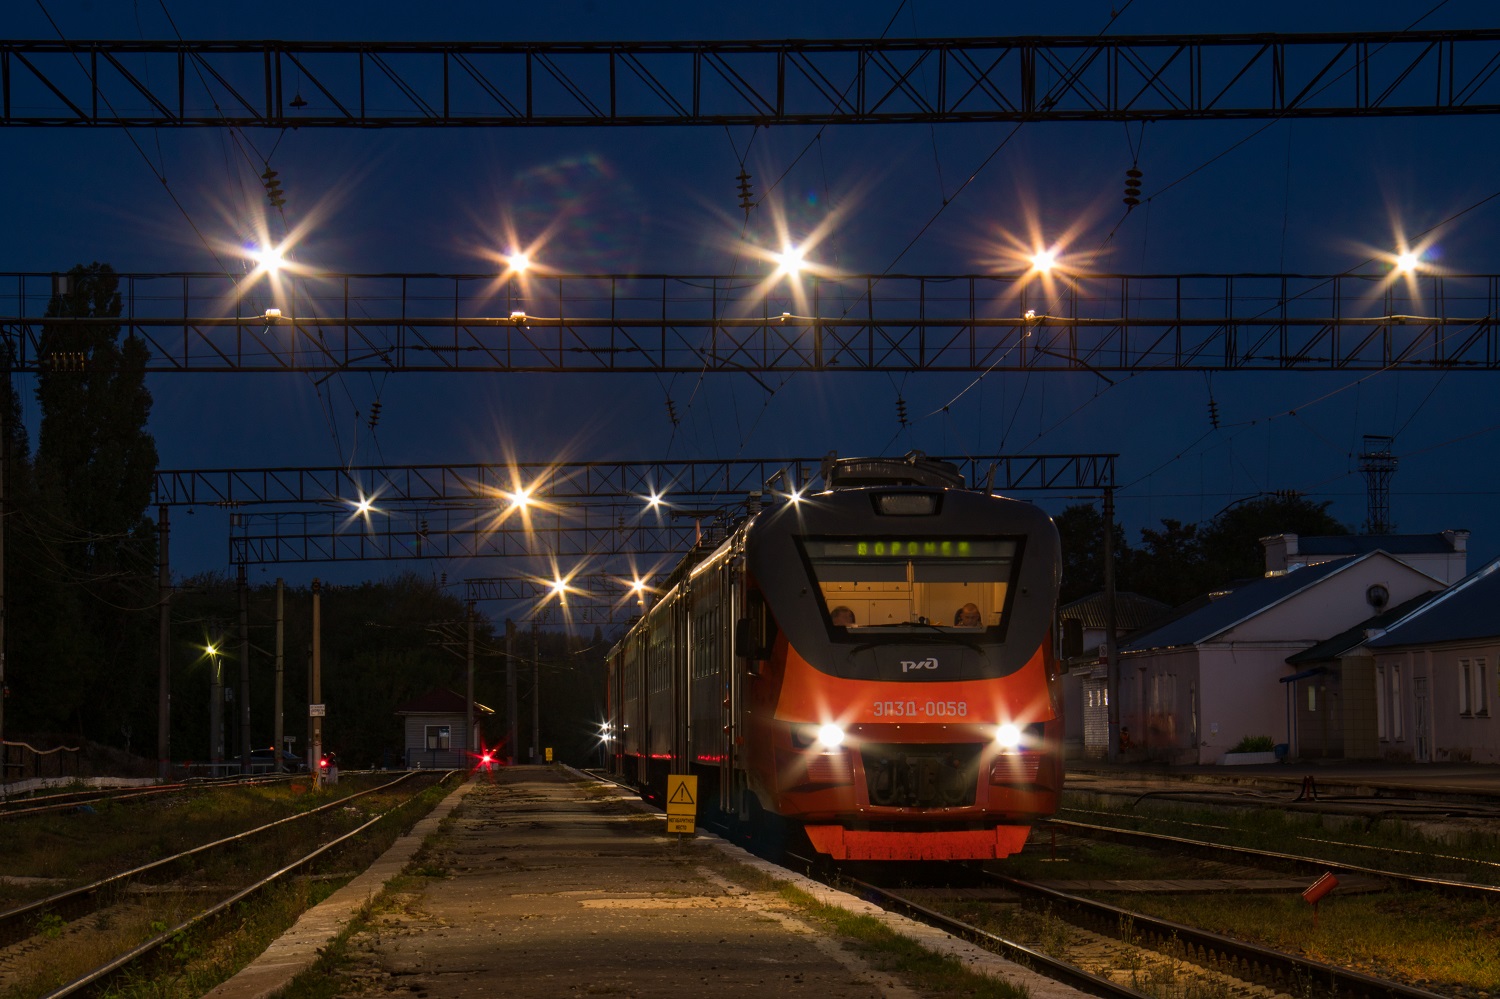 ЭП3Д-0058; Фотозарисовки (Юго-Восточная железная дорога)